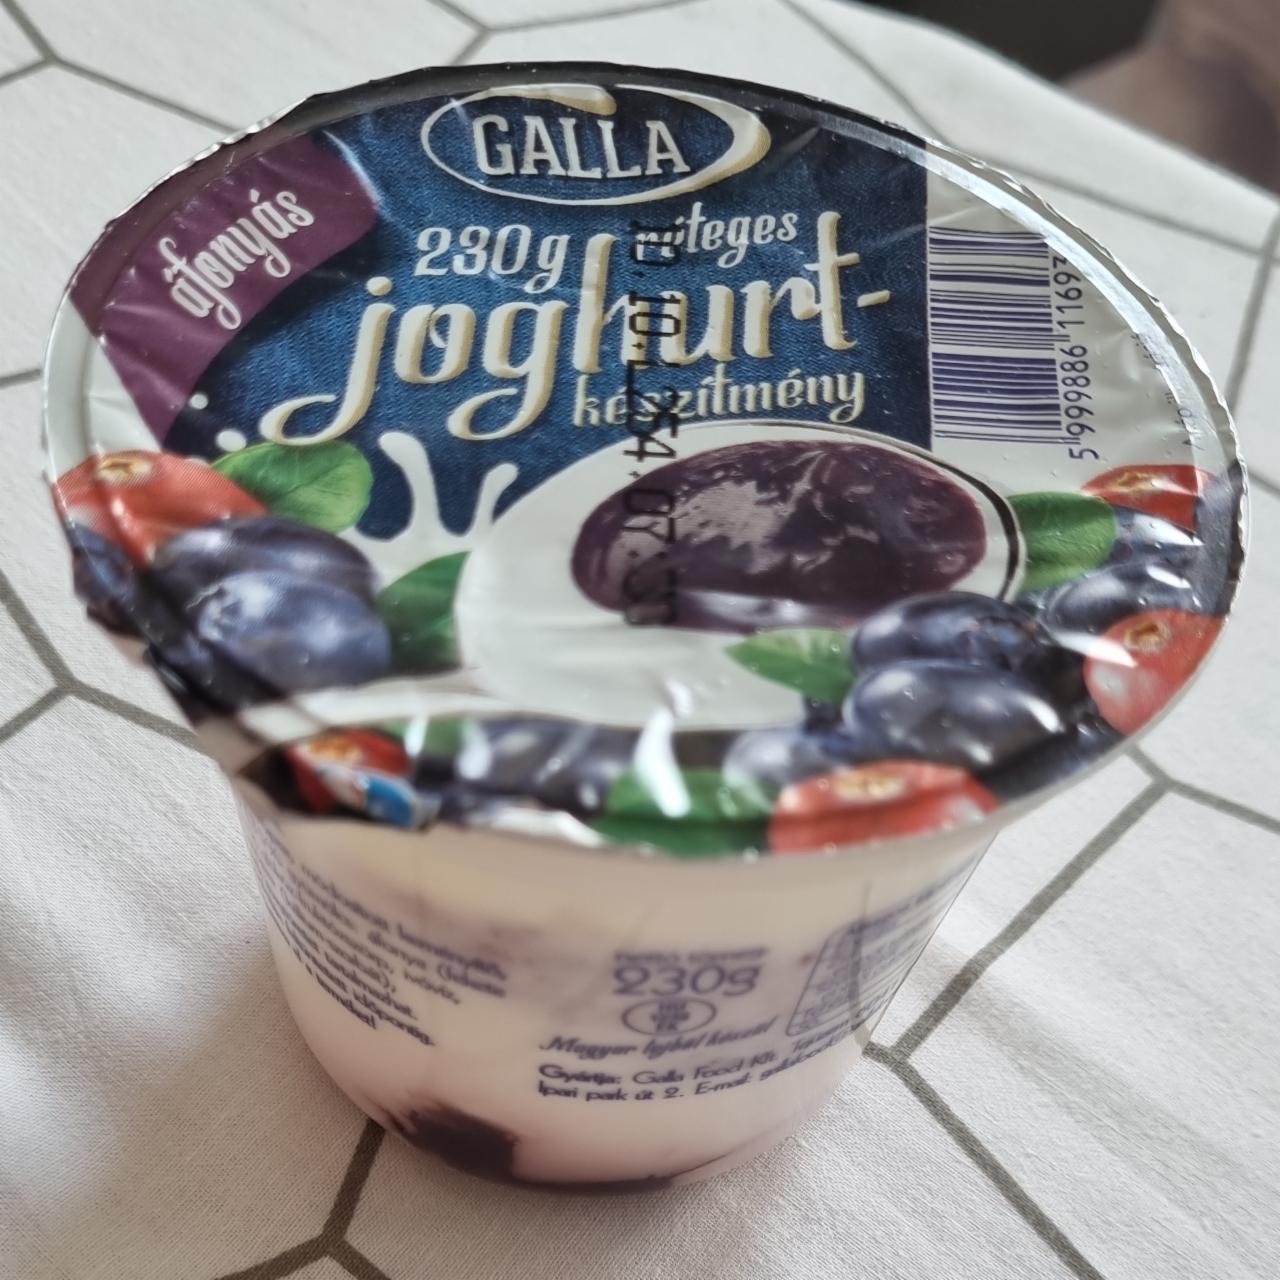 Képek - Áfonyás réteges joghurt Galla